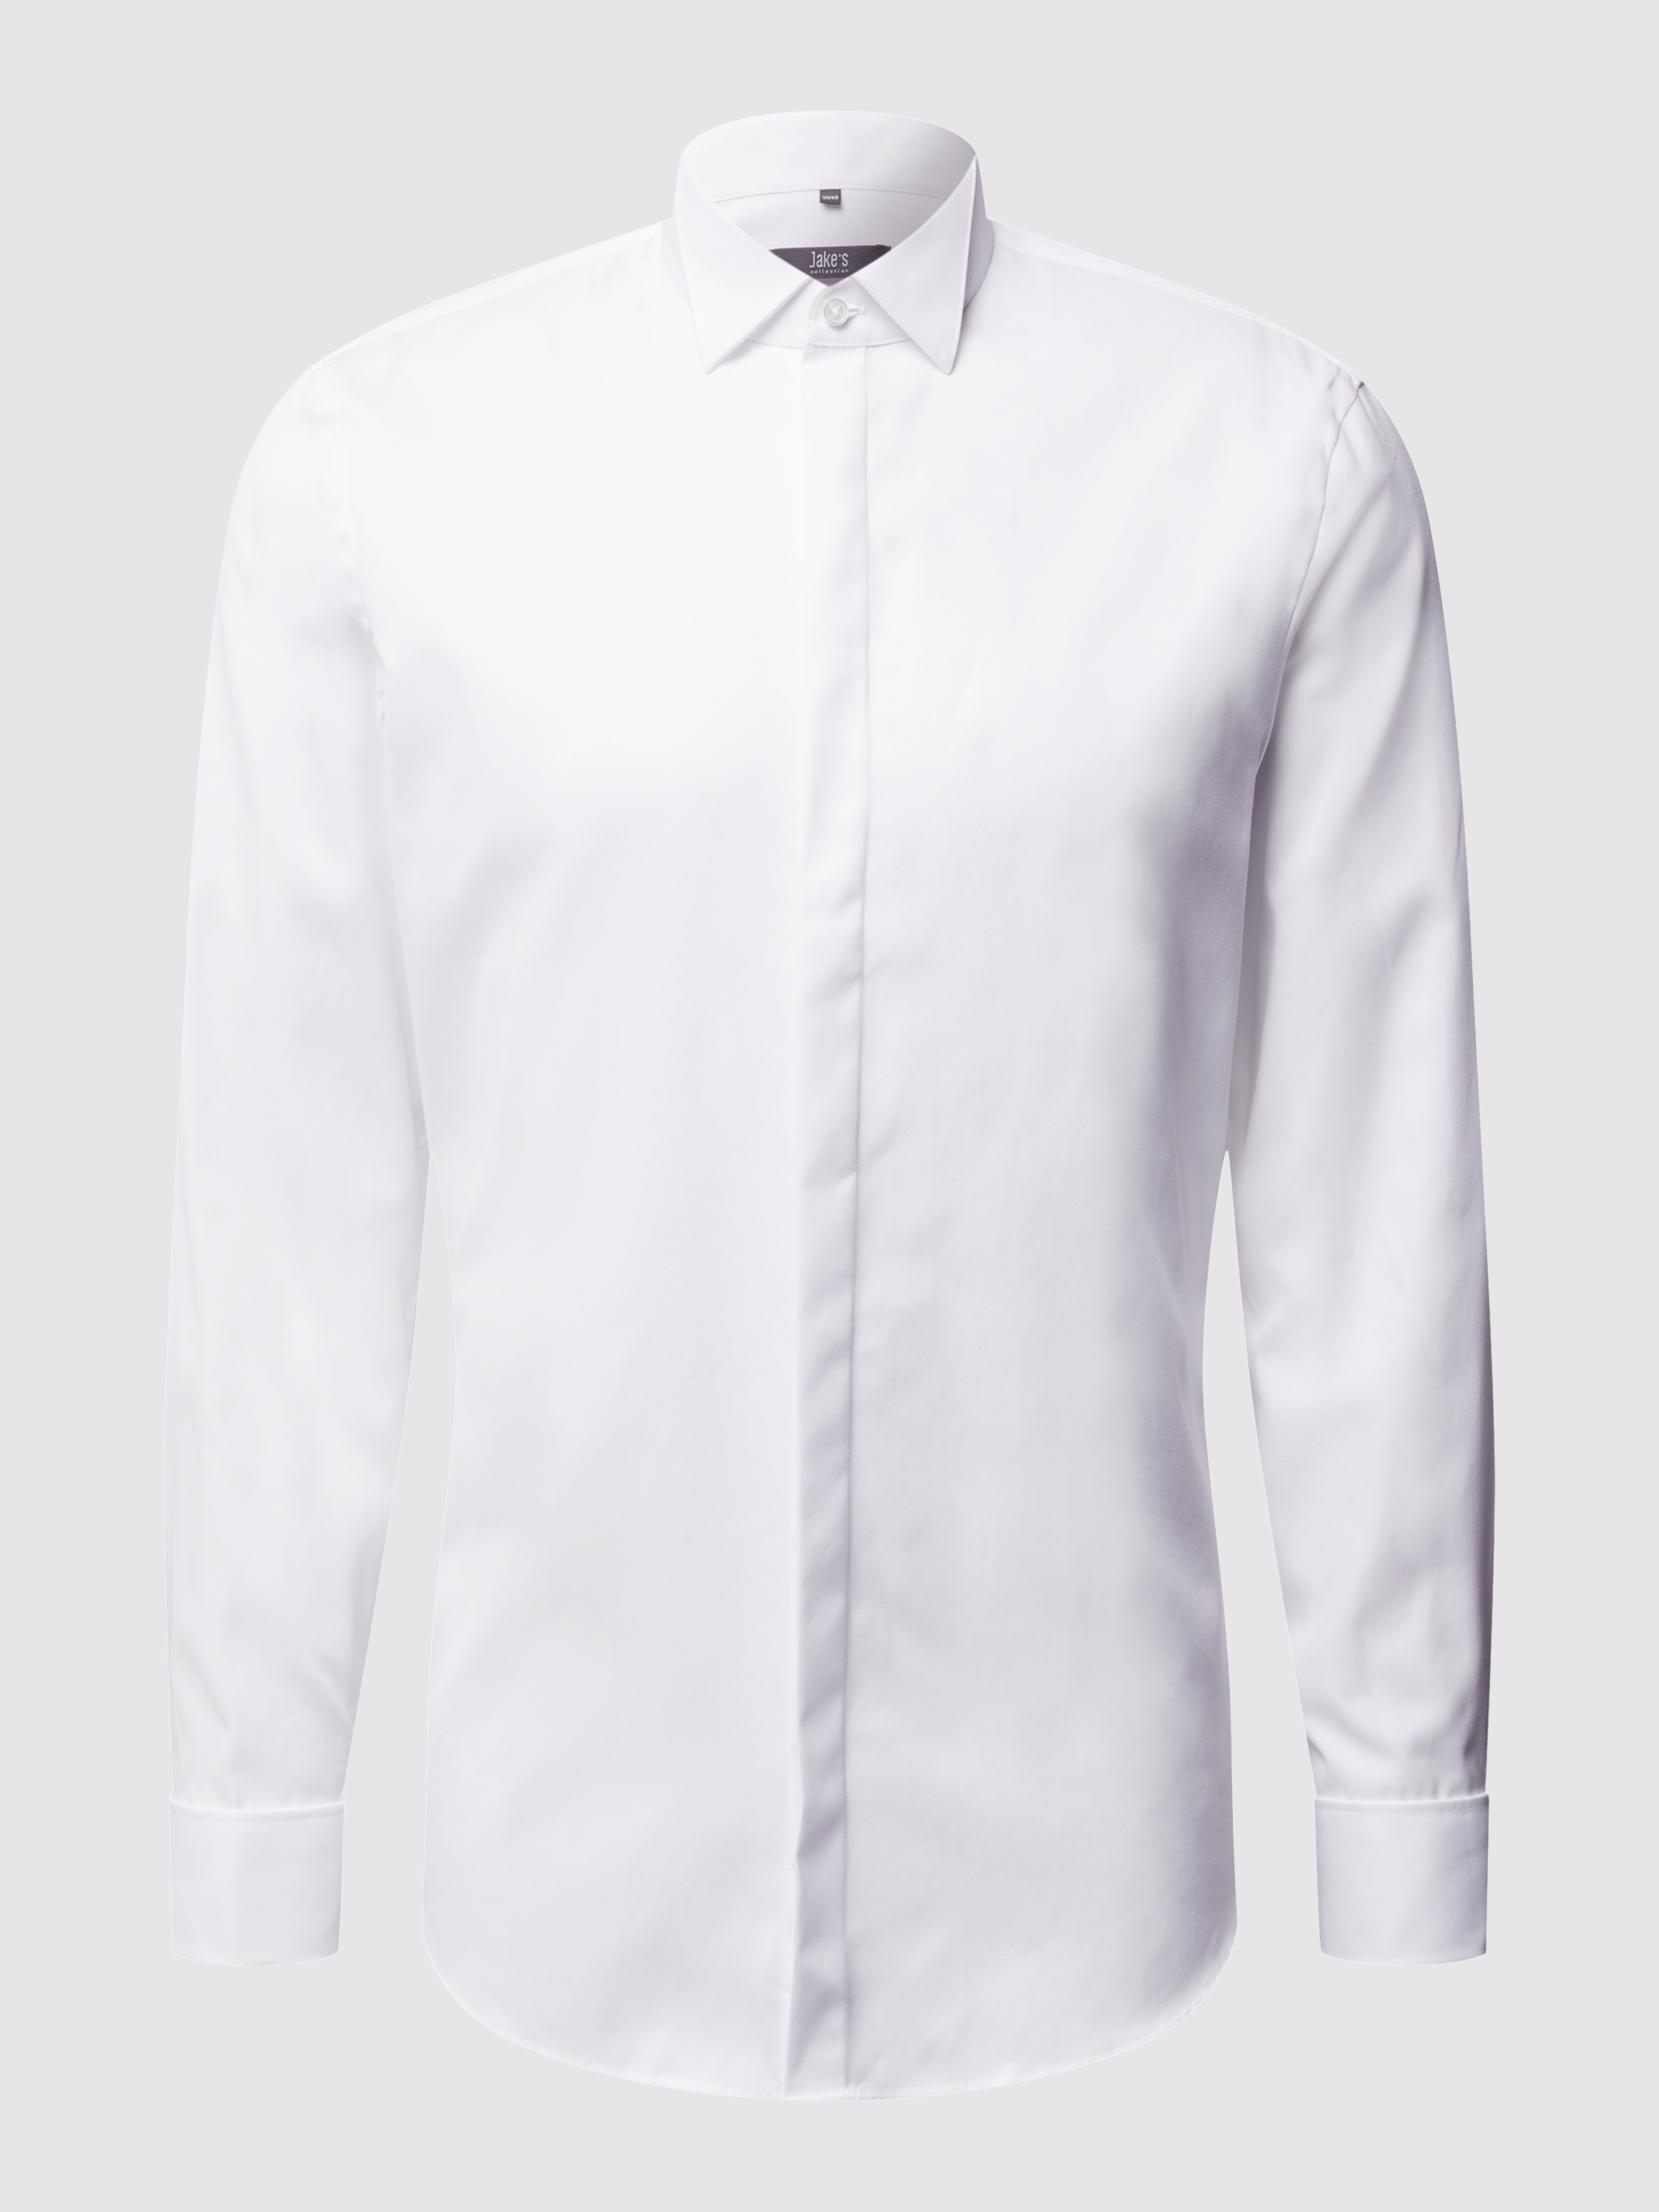 Рубашка мужская Jake*s 9372925 белая 45/46 (доставка из-за рубежа)